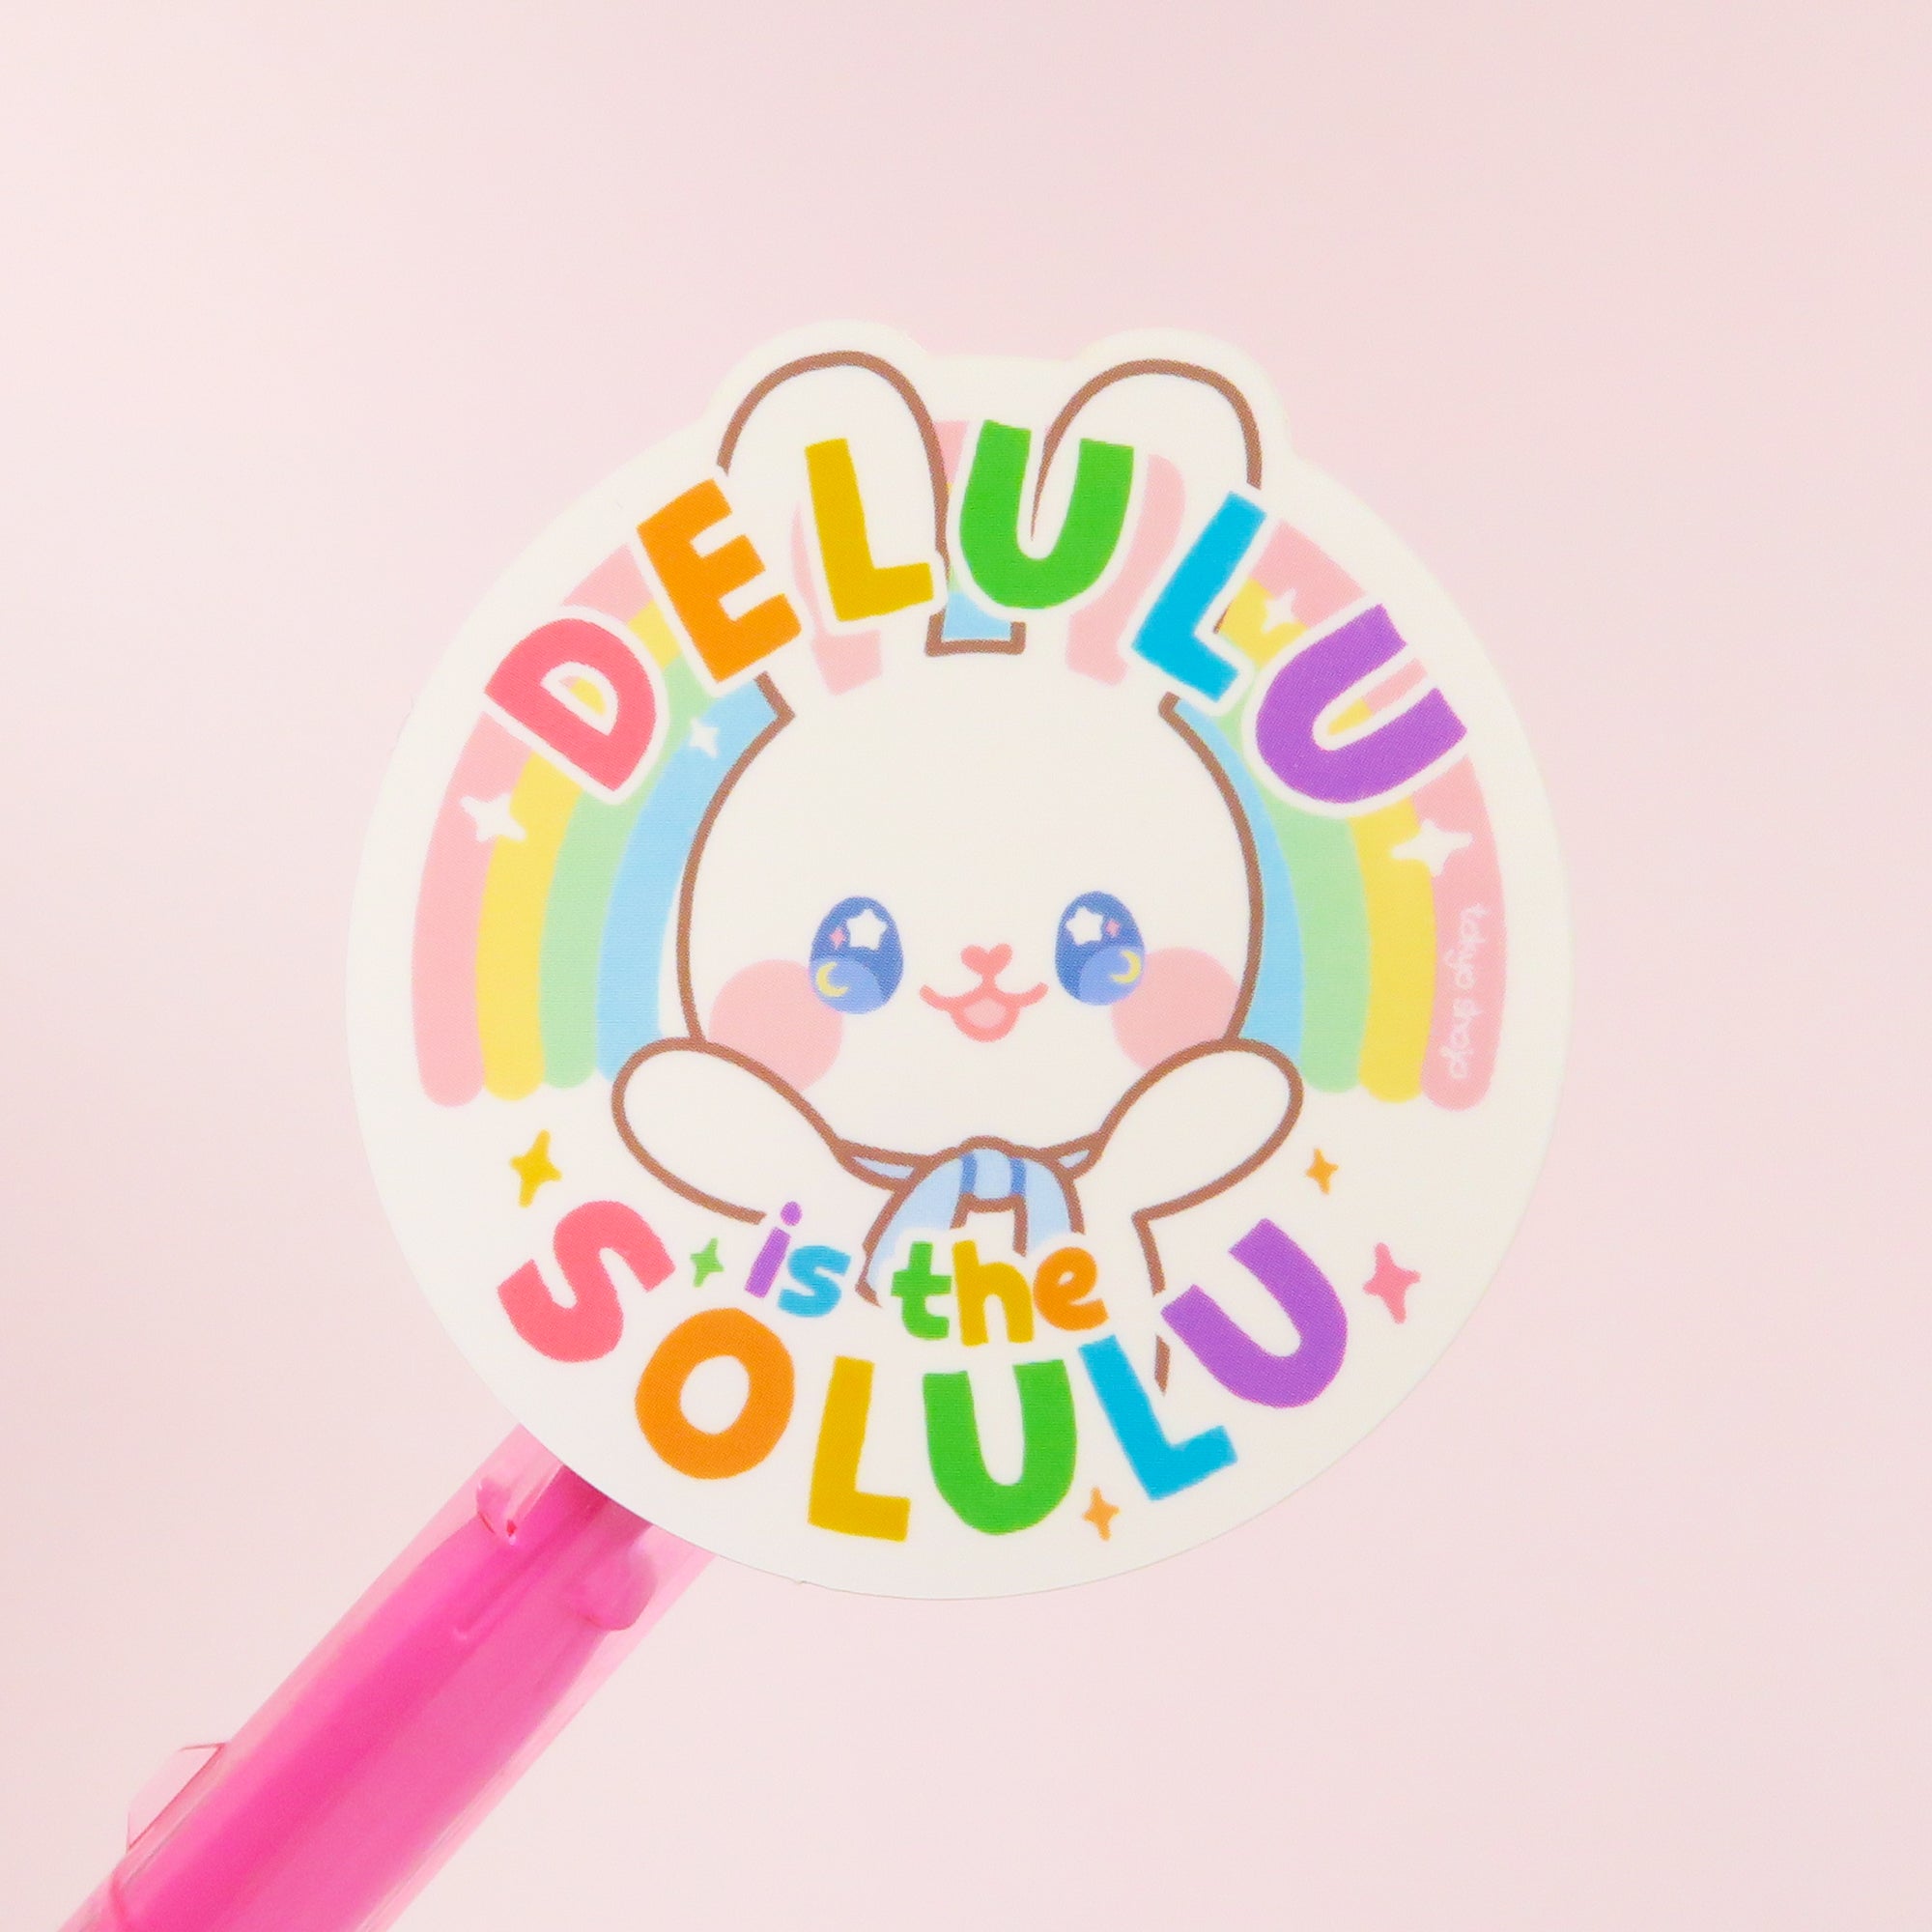 Delulu is the Solulu Sticker